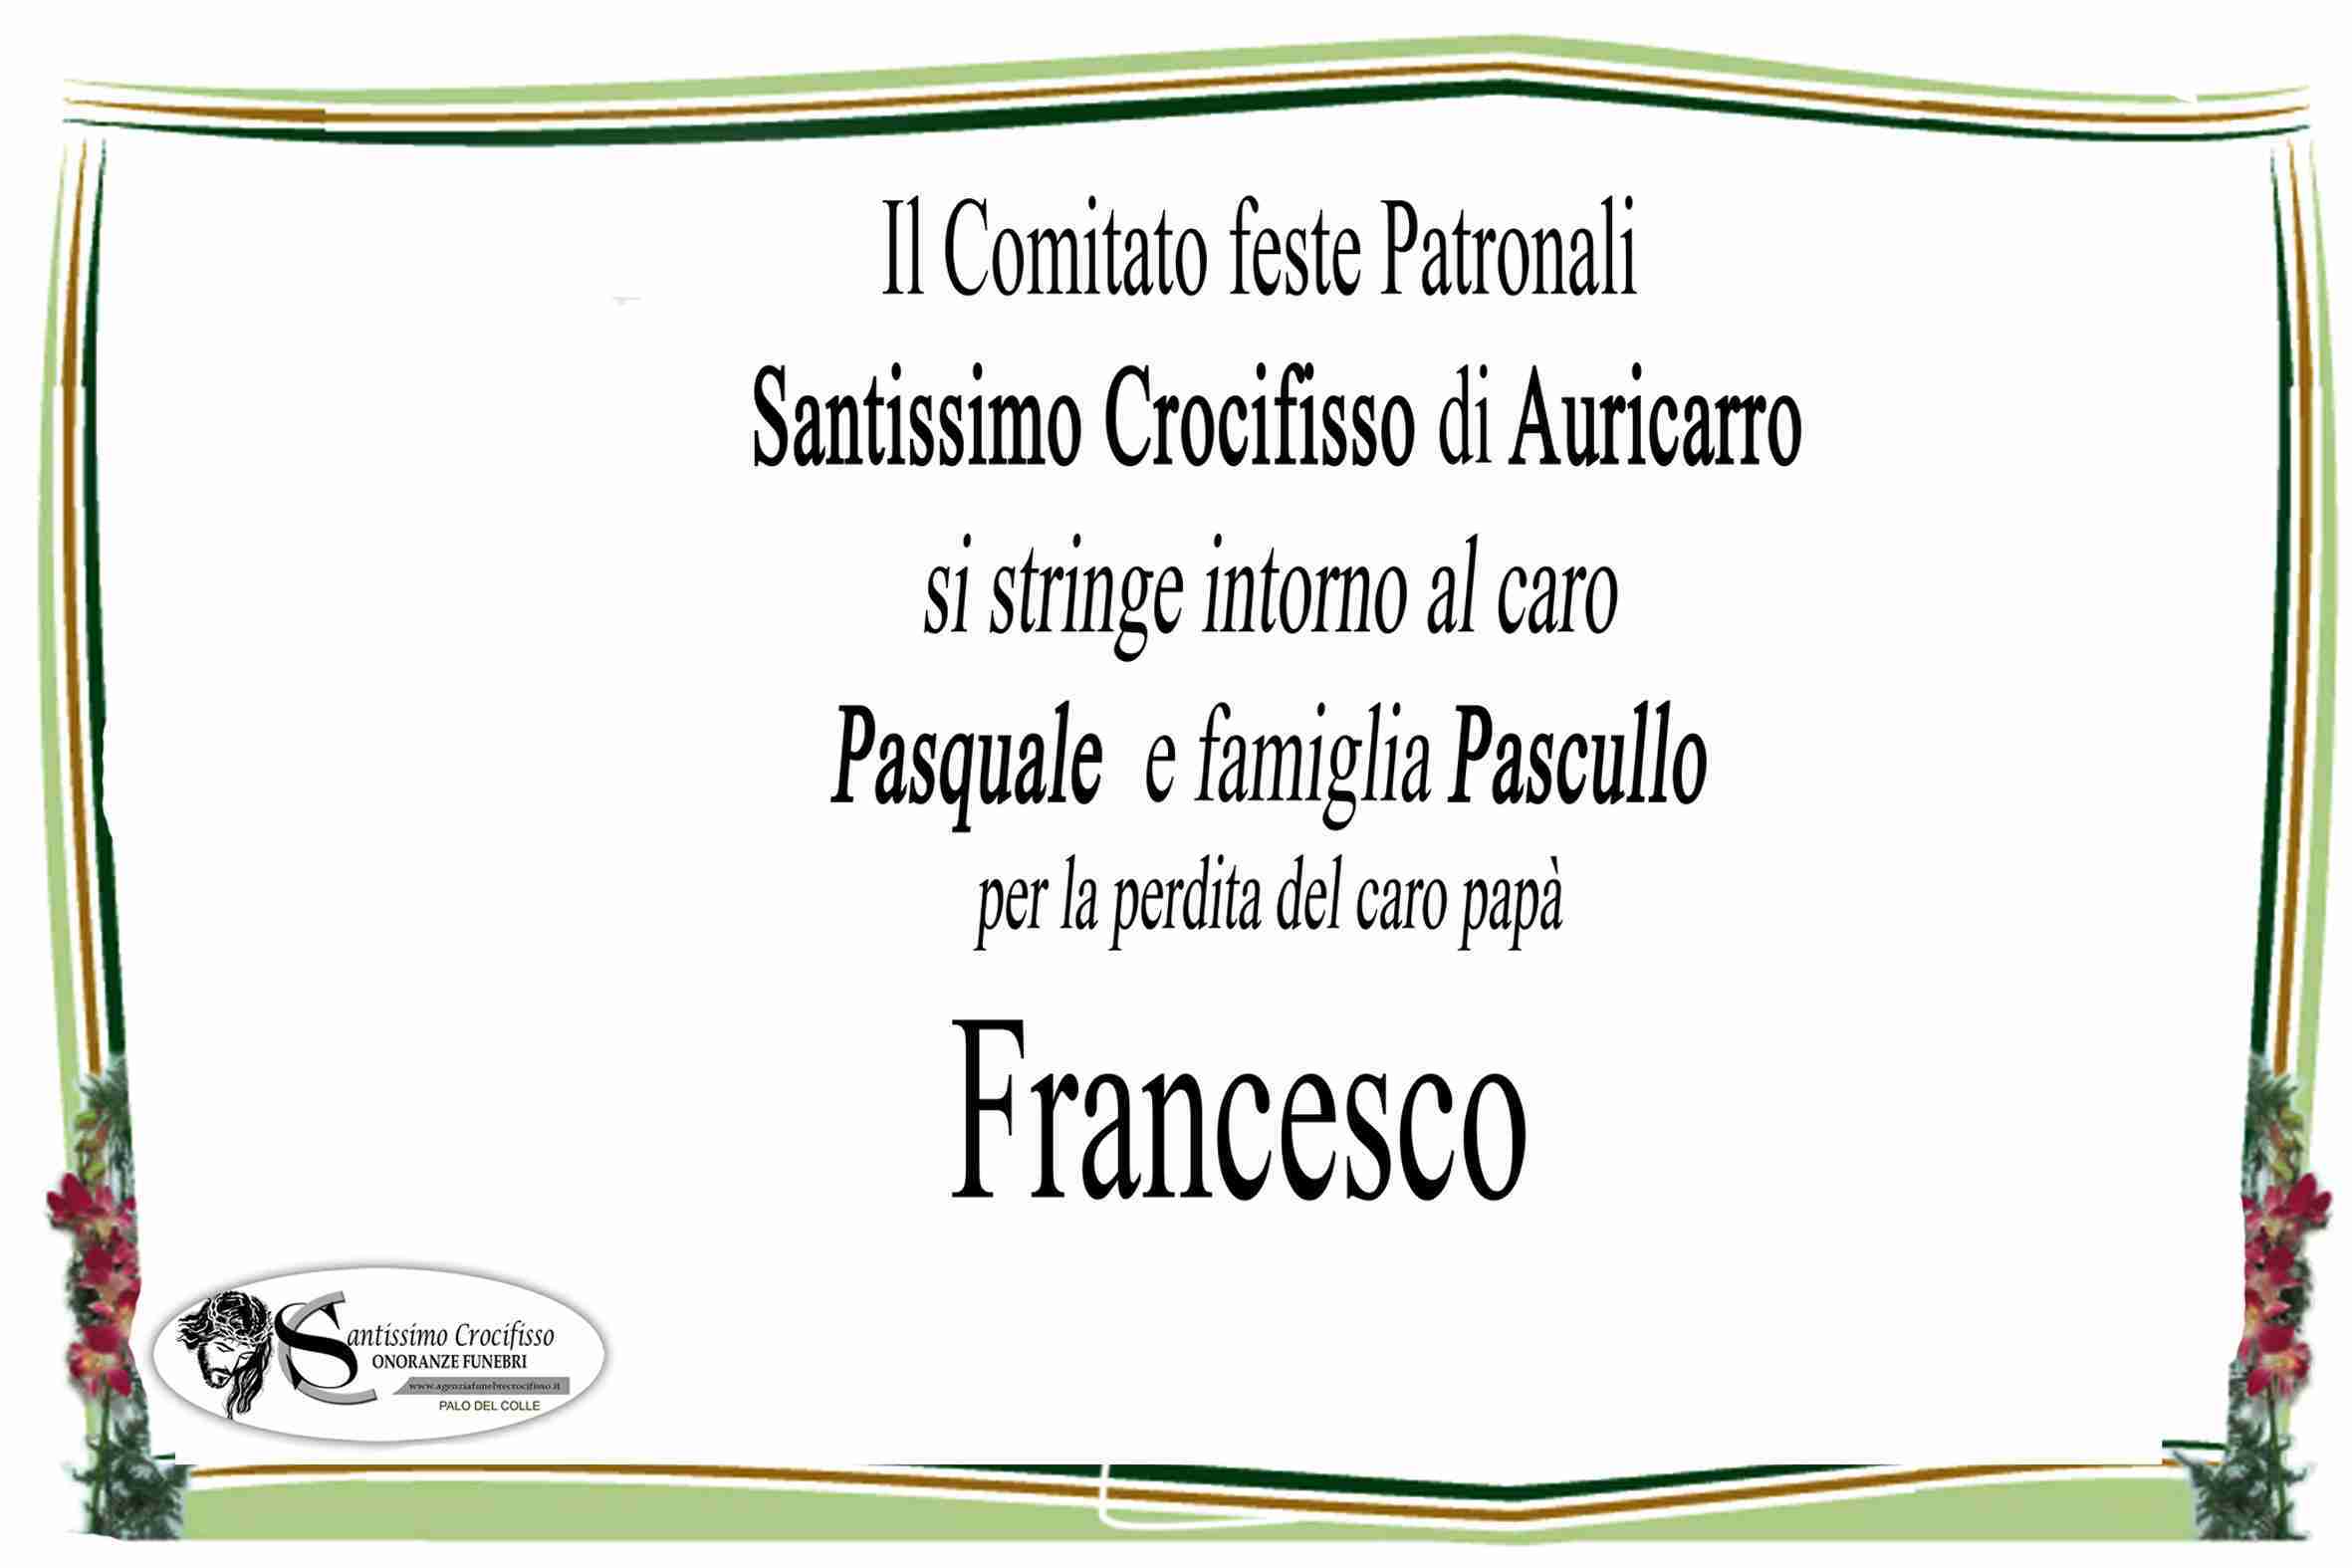 Francesco Pascullo